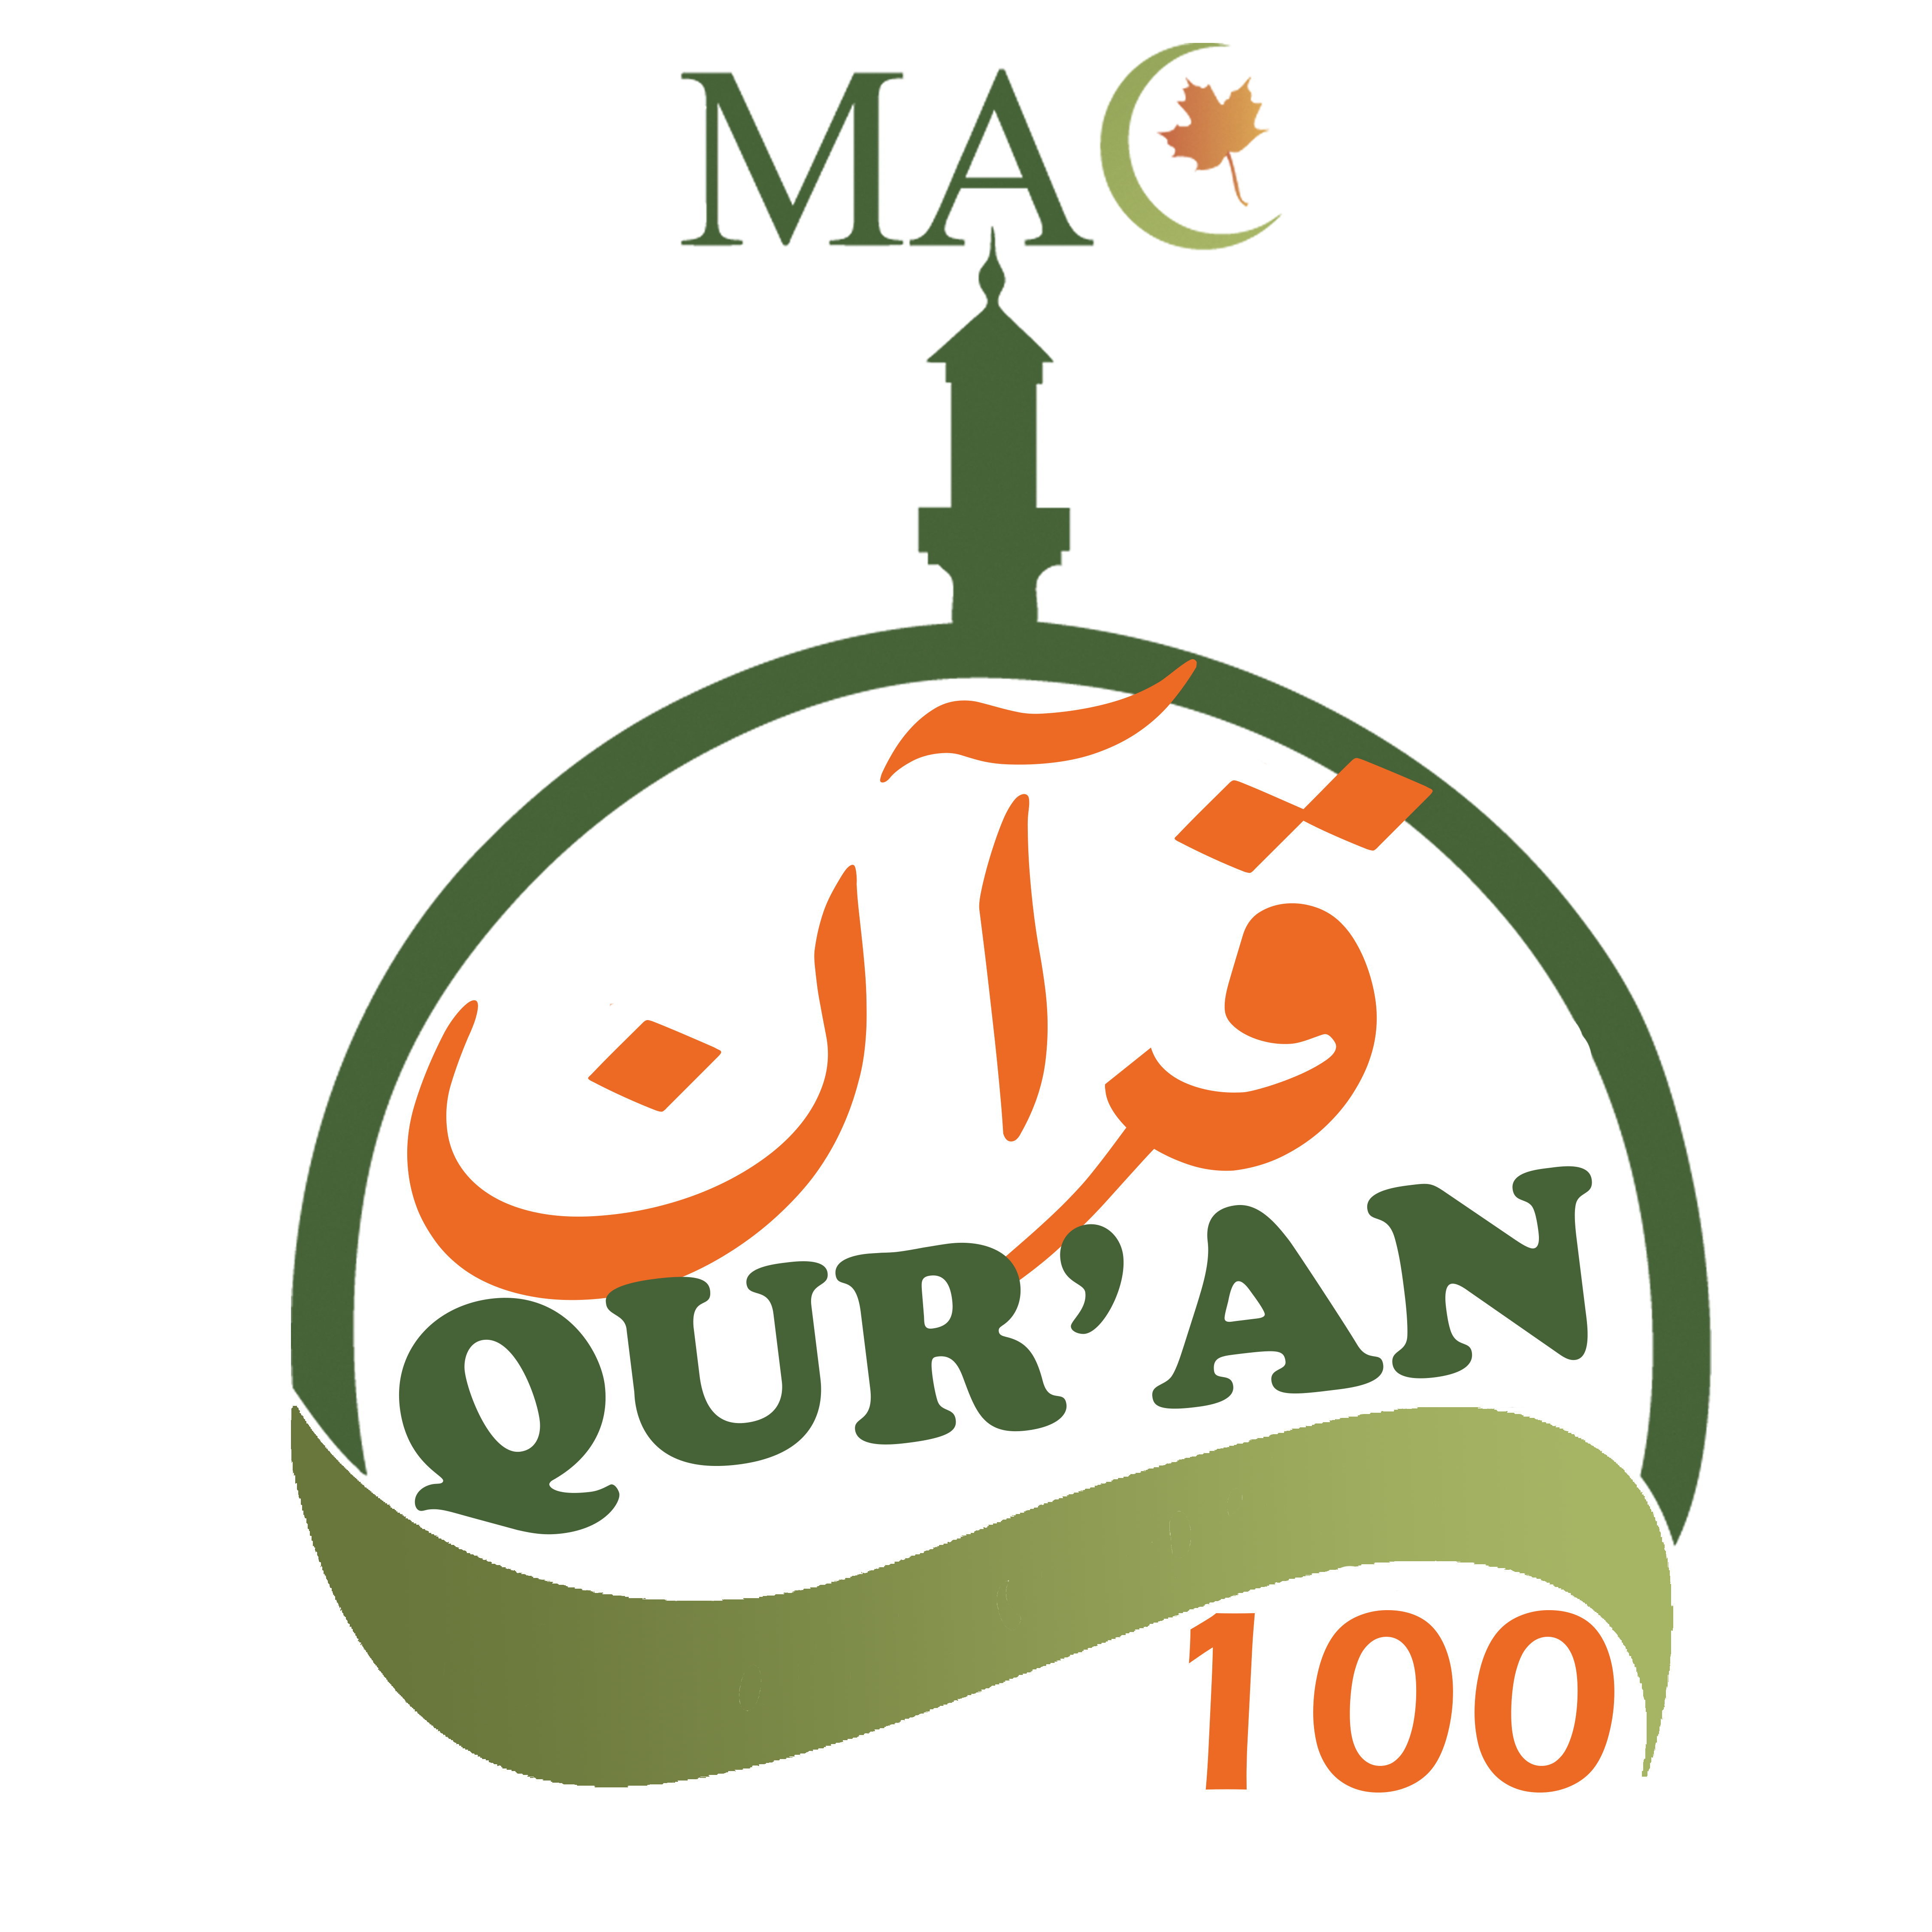 Qur'an 100
